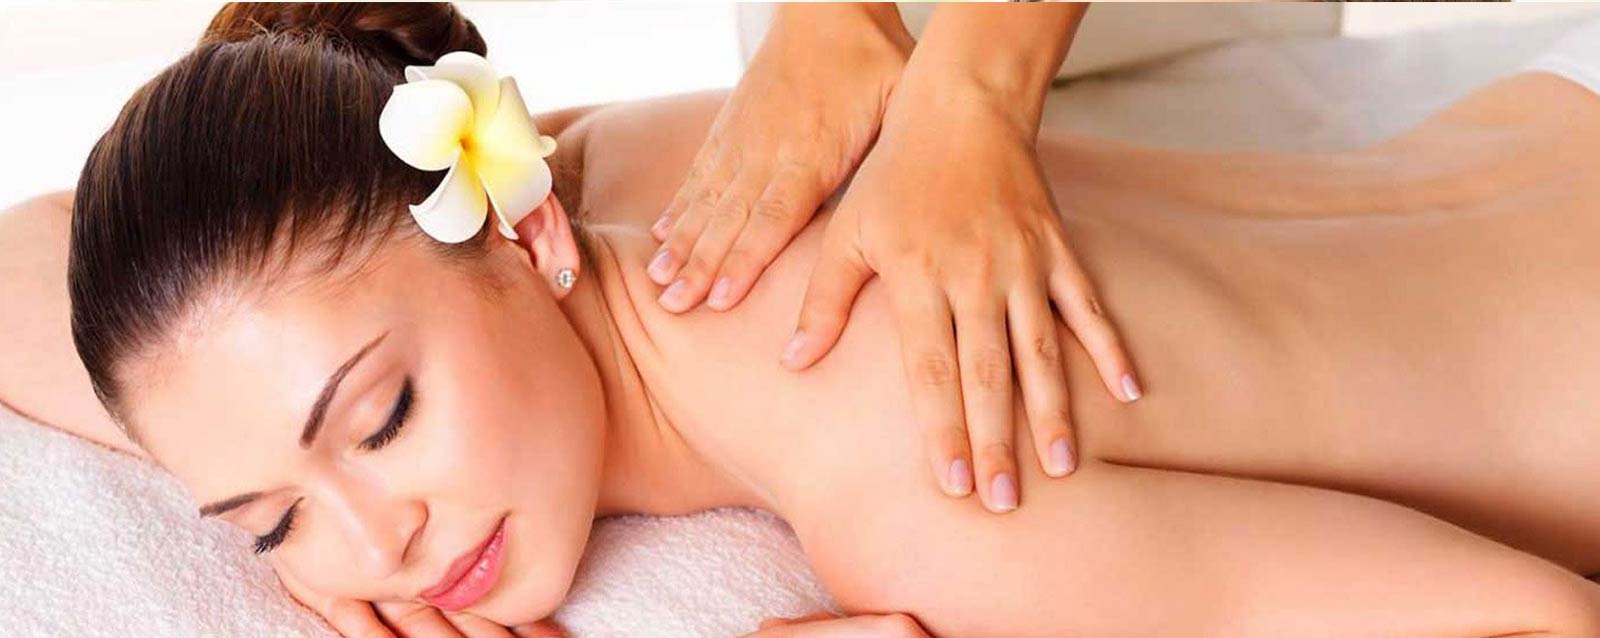 Protocolo: Power Delivery Massage - Massagem Redutora e Firmante